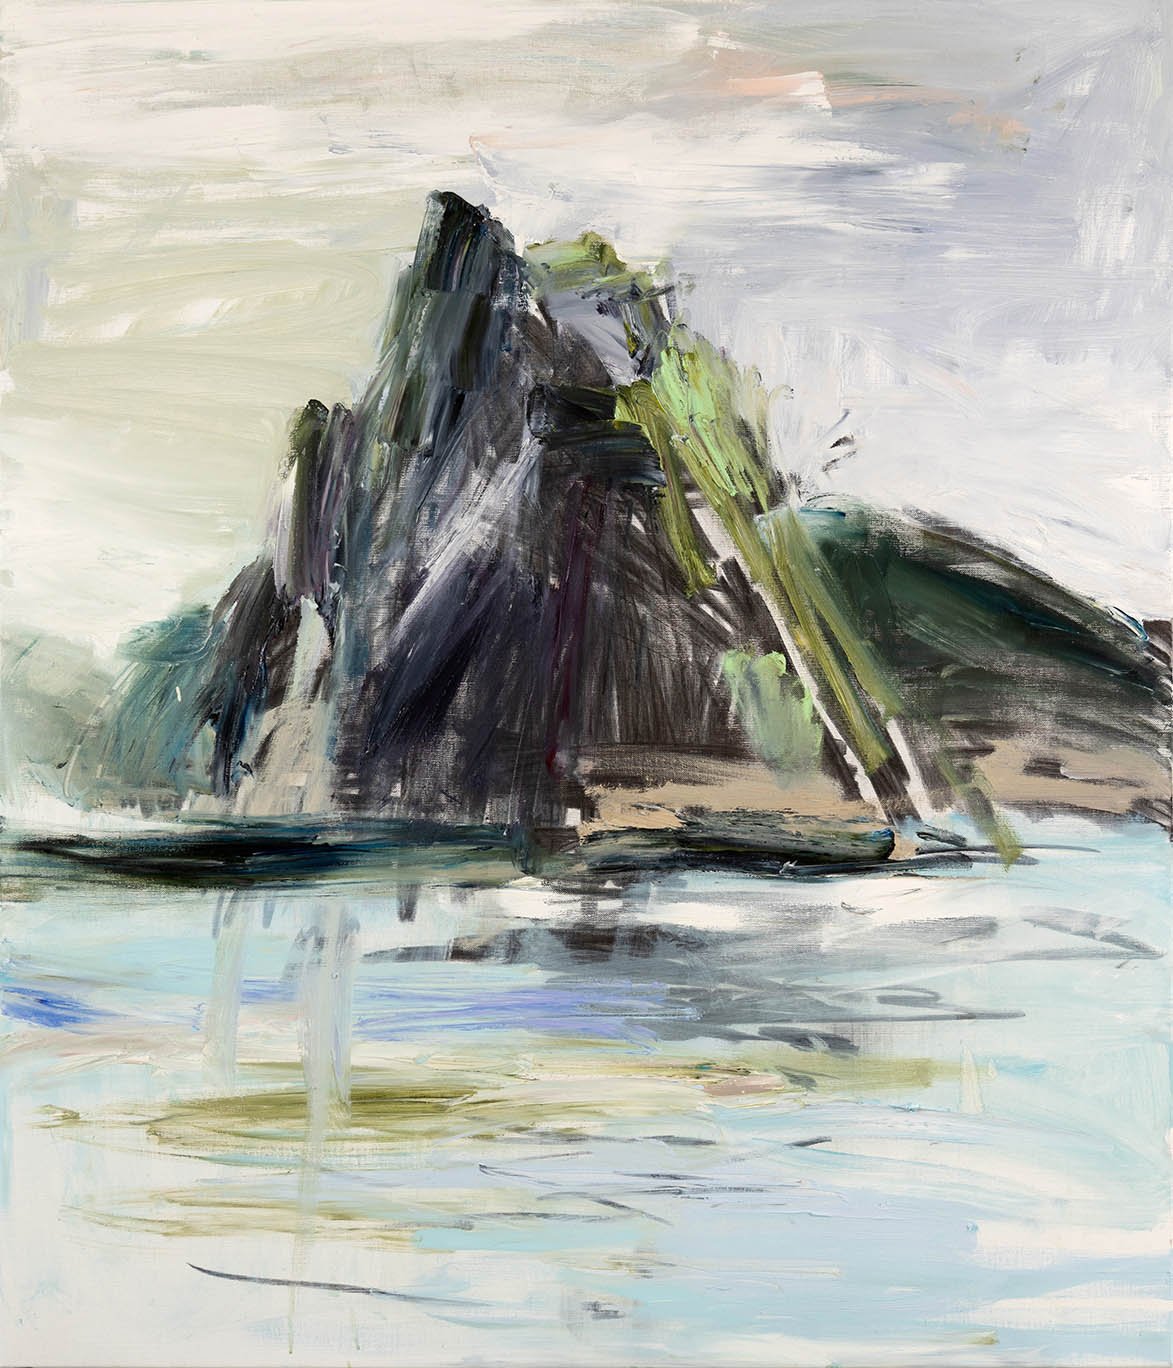 The Needles (Maatsuyker island), 2022 oil on linen 92 x 107 cm